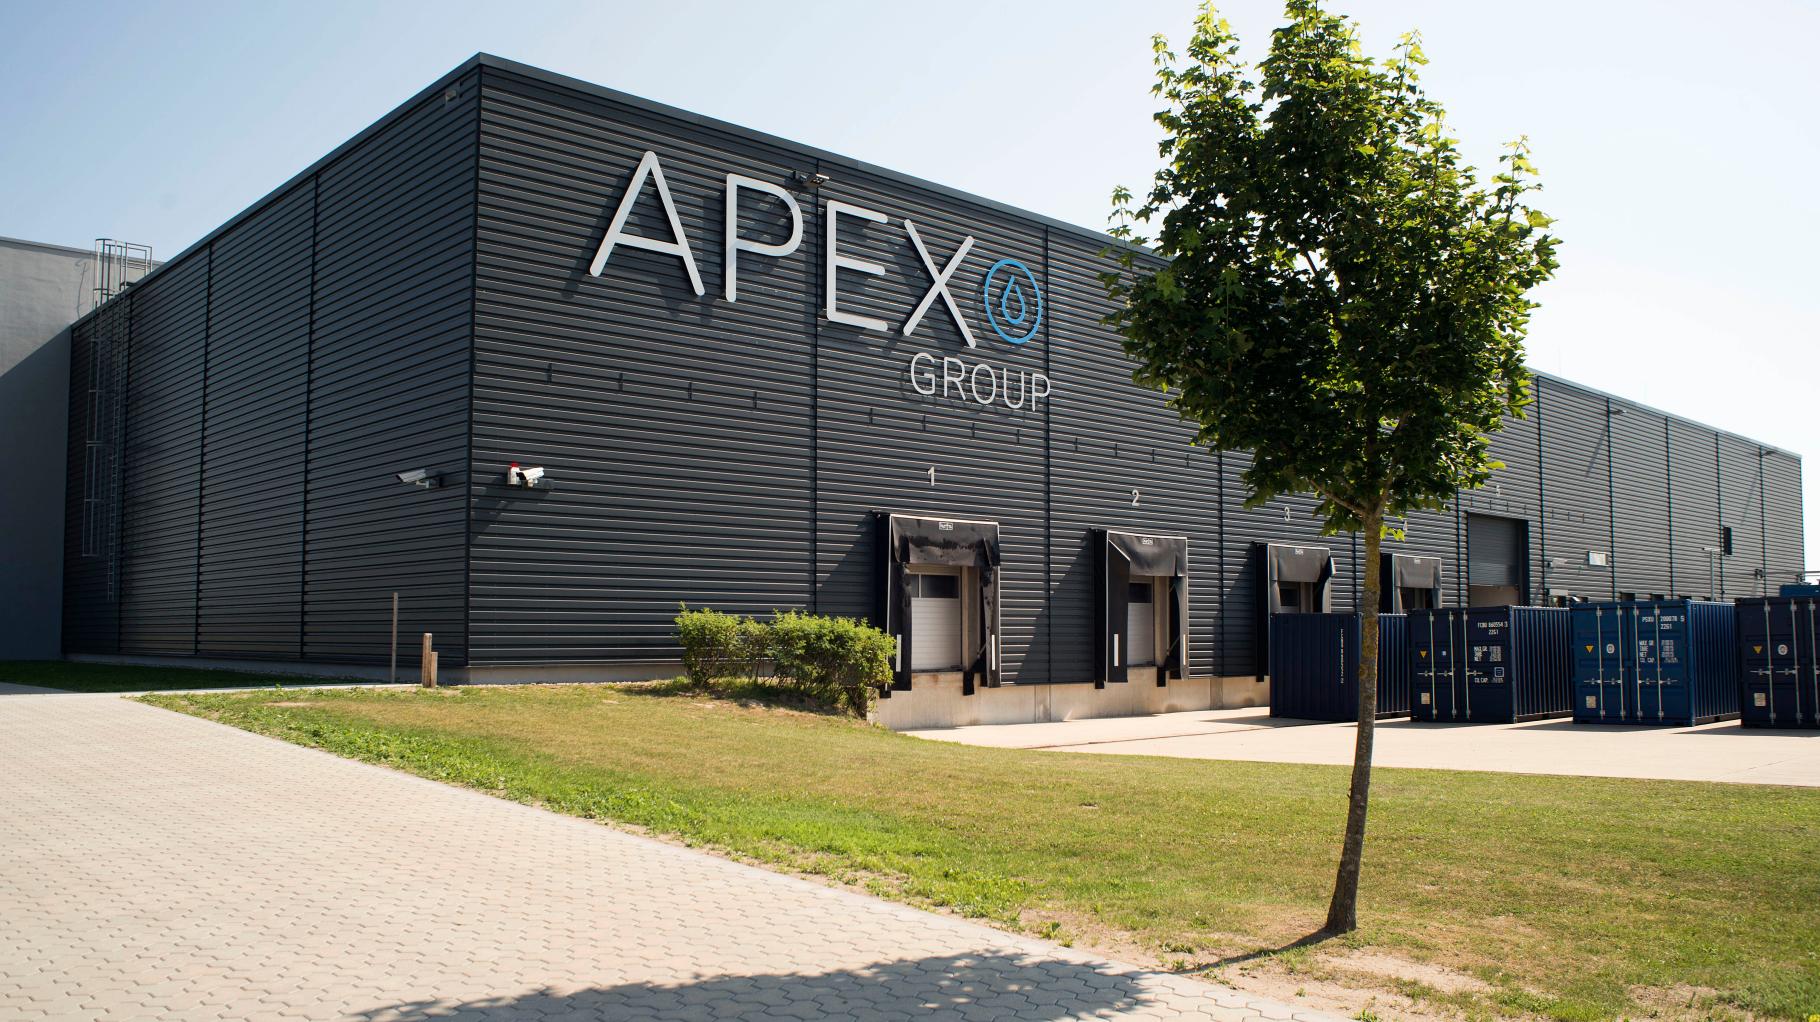 7500 Tonnen grüner Wasserstoff jährlich aus der neuen Elektrolyseanlage von der Apex Group